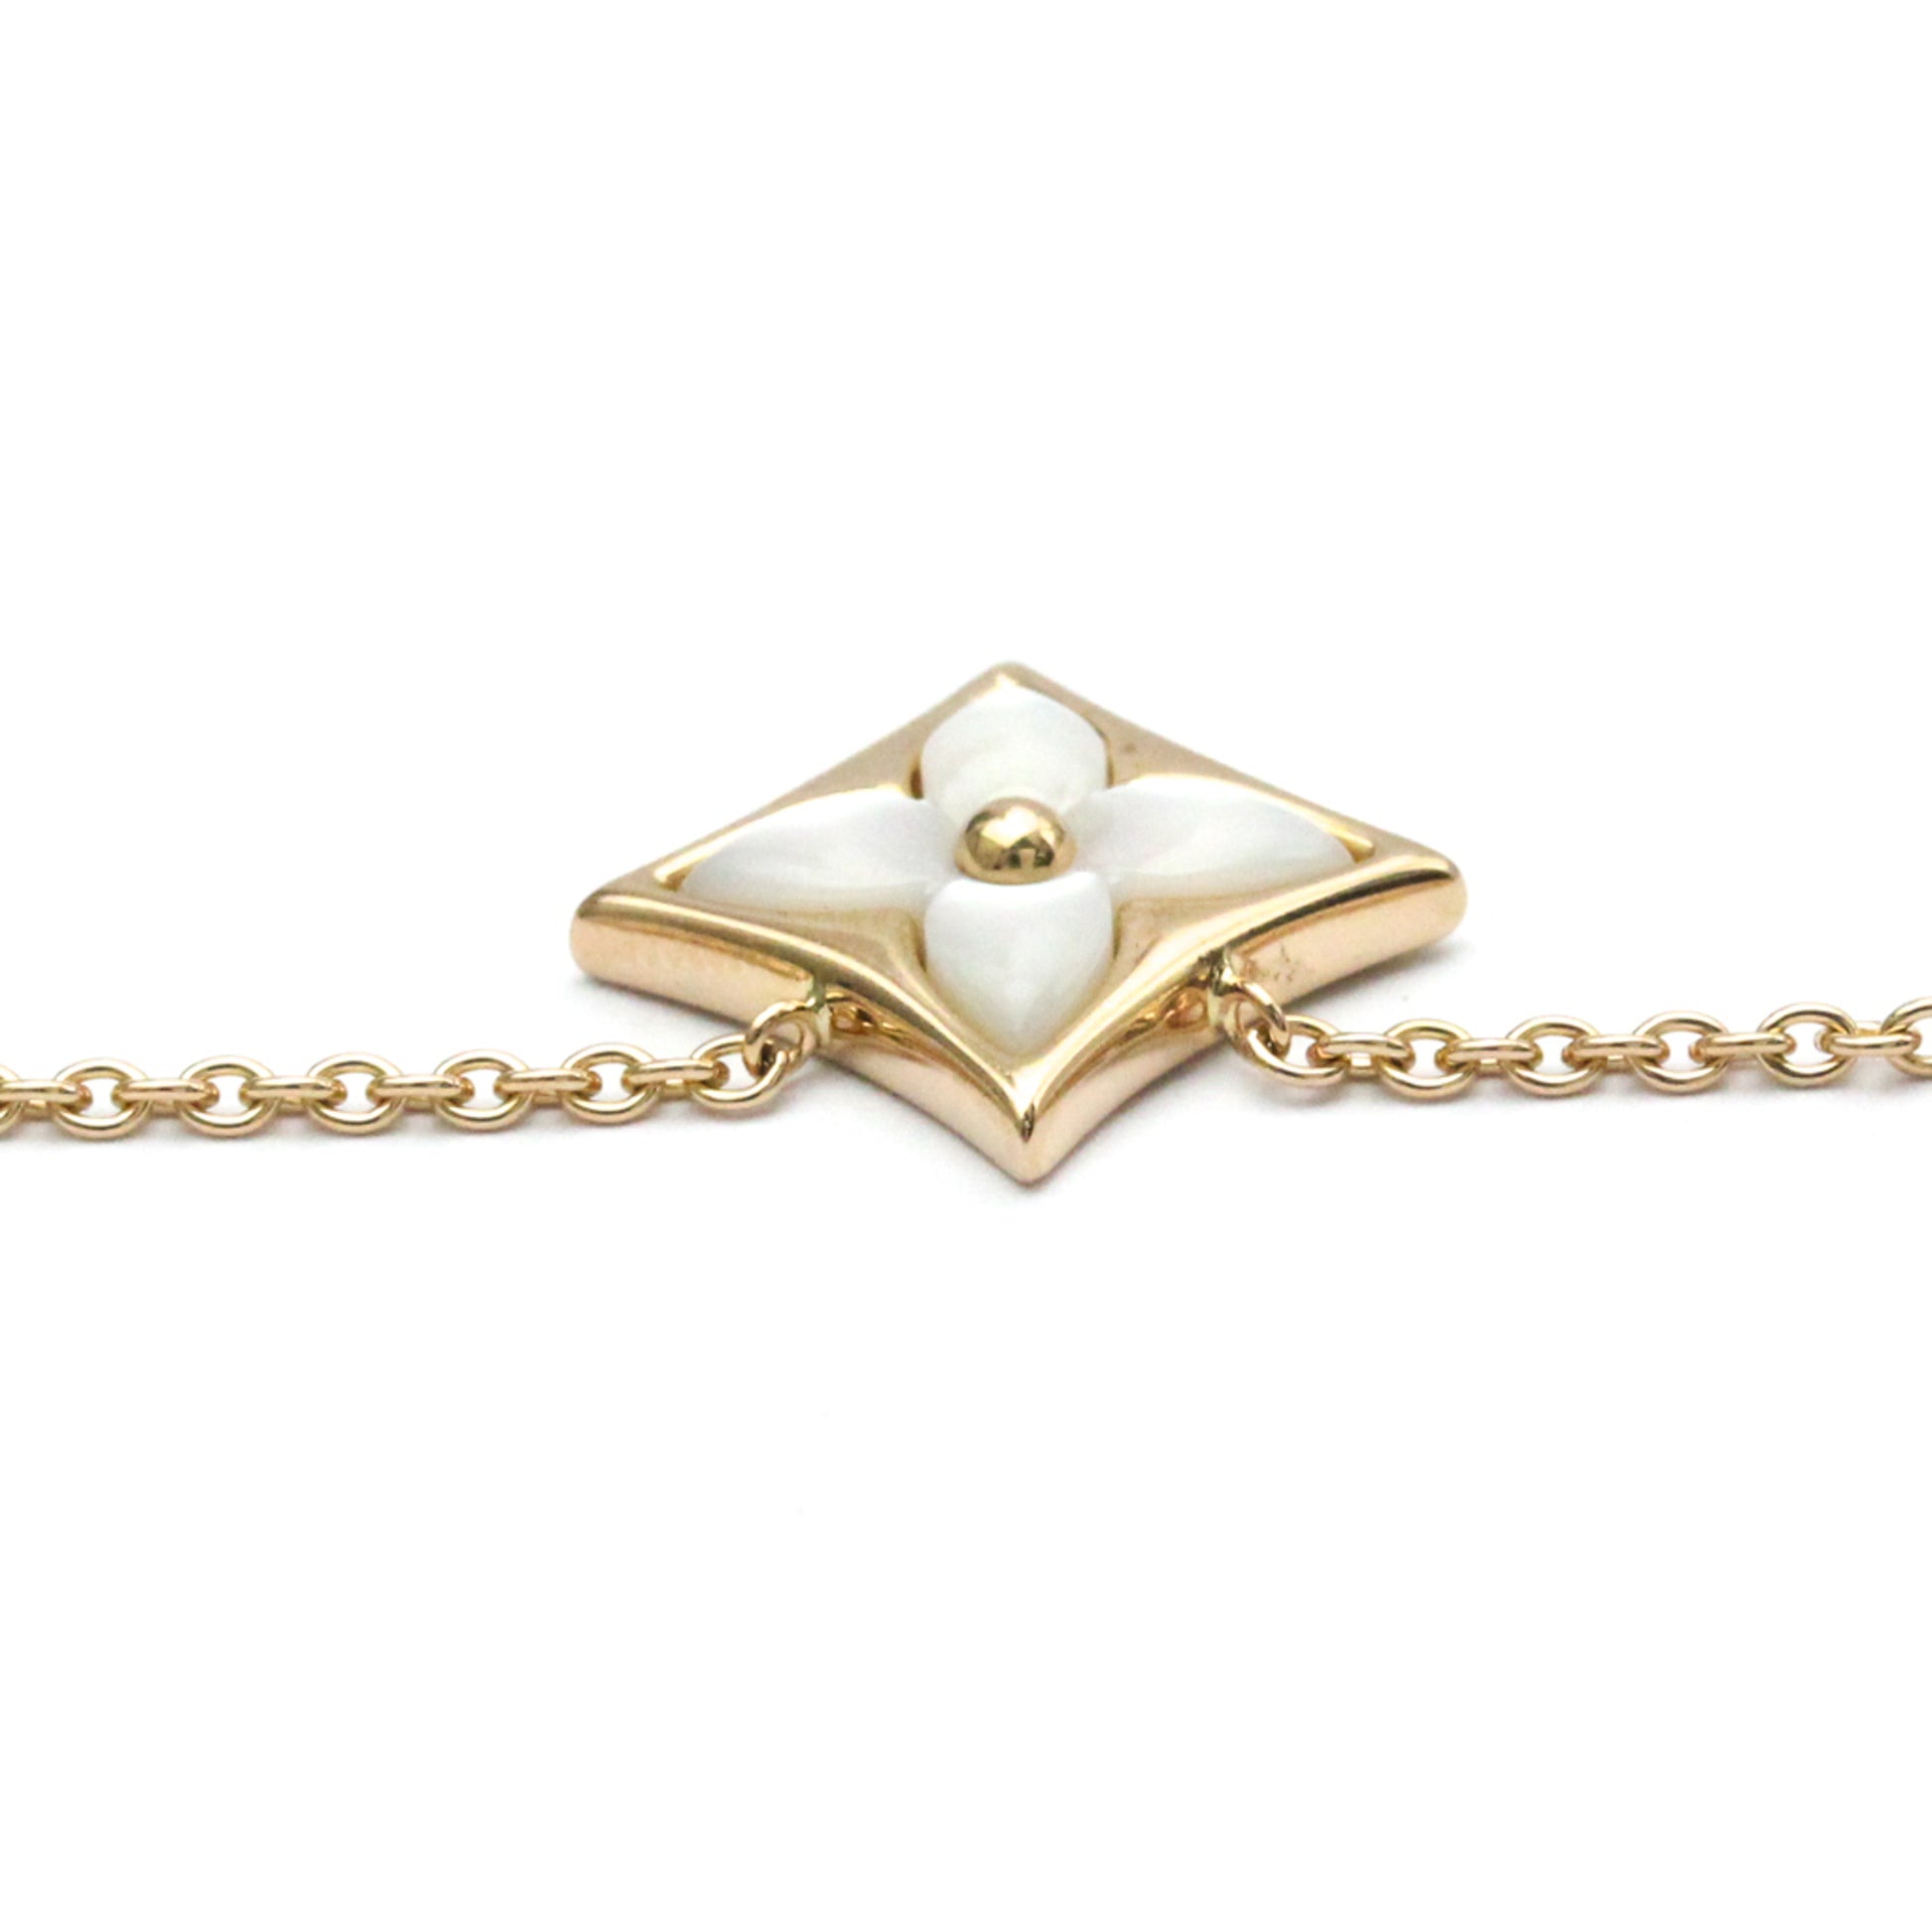 Shop Louis Vuitton Necklaces & Pendants (Q93612) by mongsshop